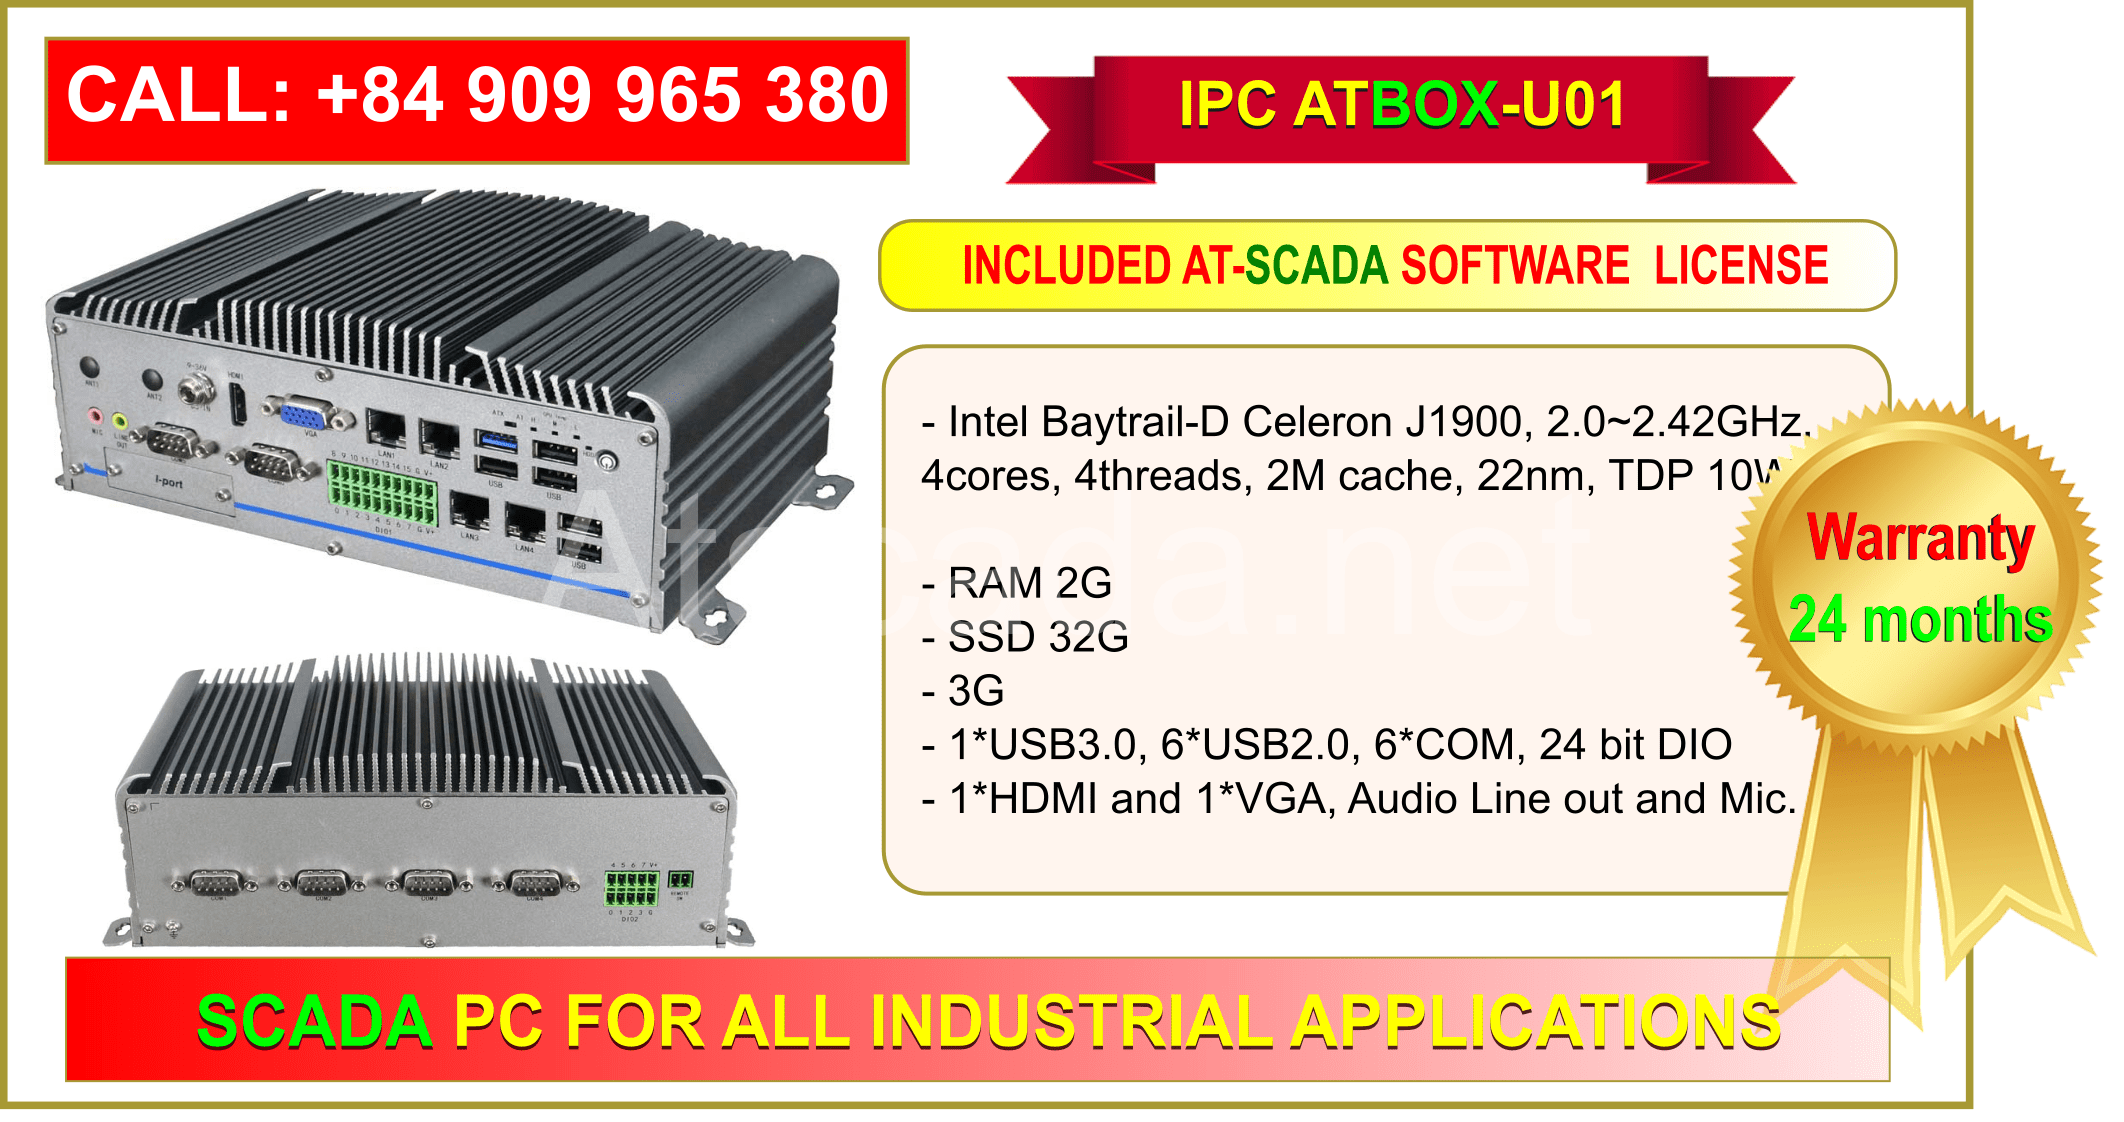 Máy tính công nghiệp ATBOX-U01